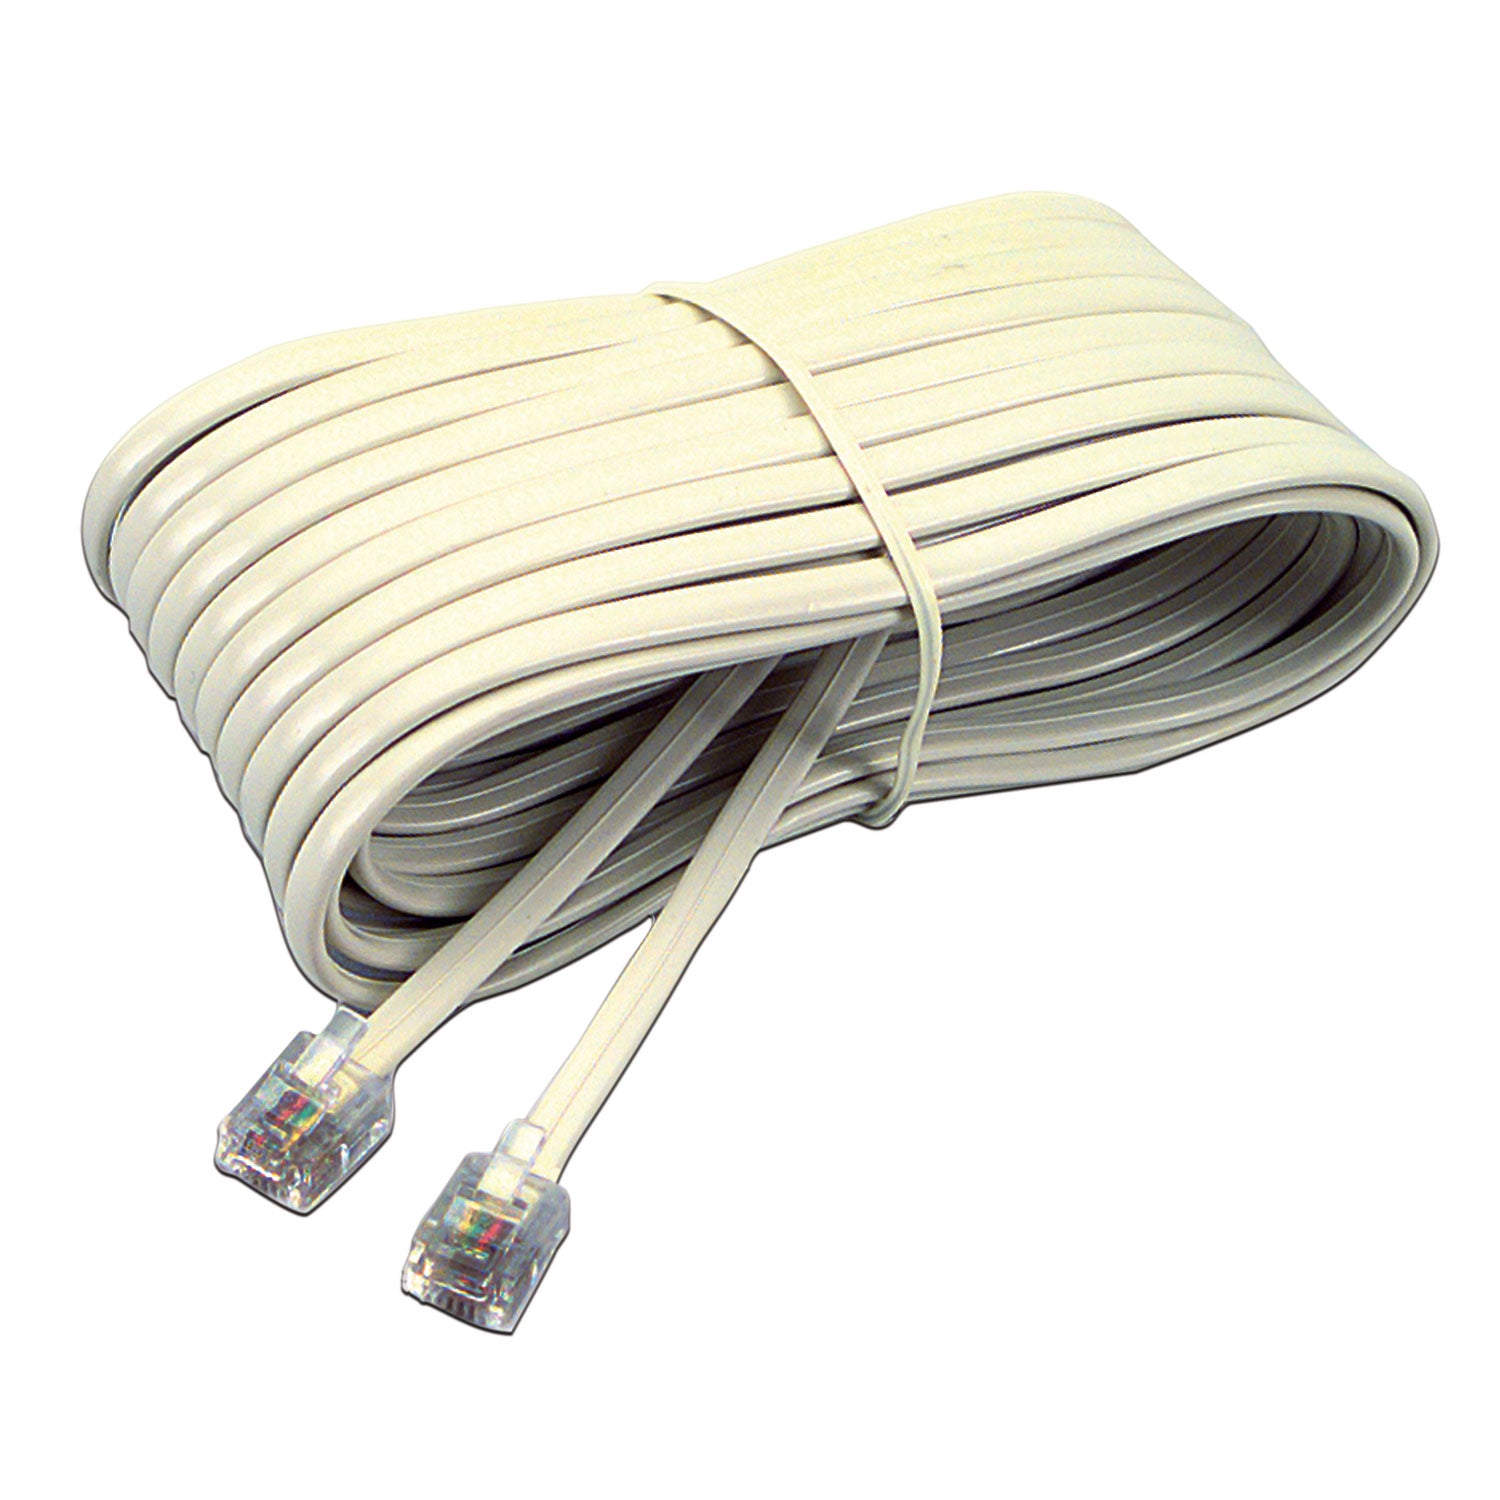 Telephone Extension Cord, Plug/Plug, 25 ft, Ivory - 